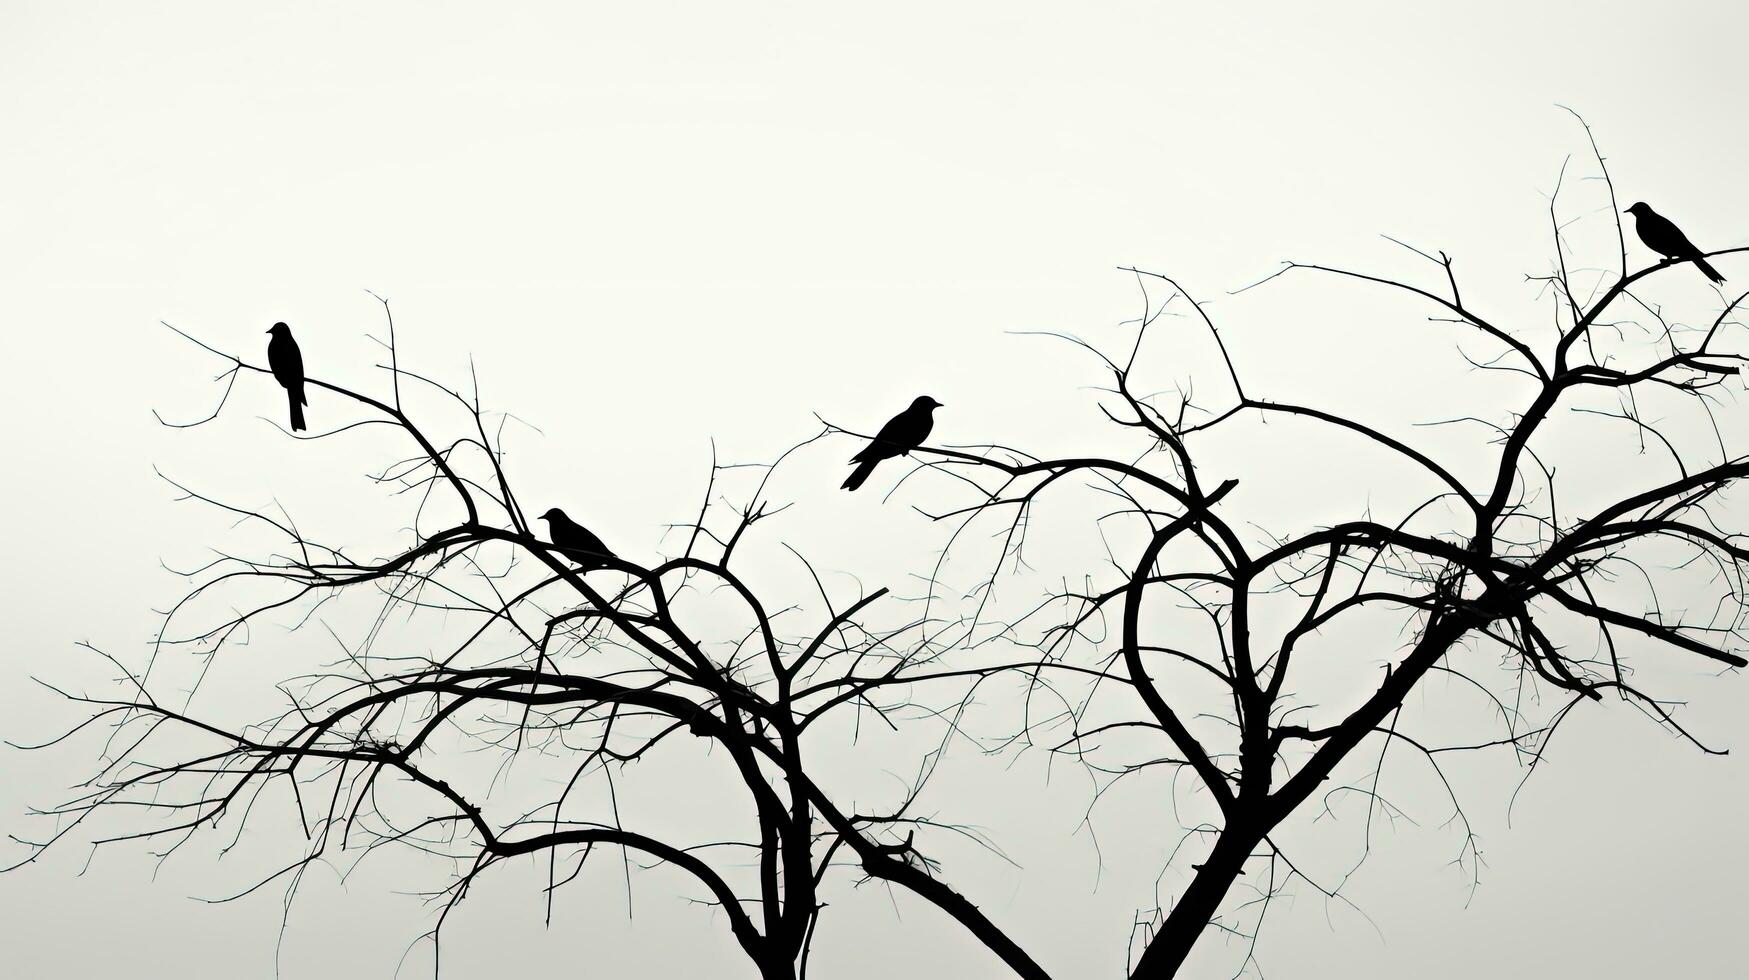 monocromo imagen de pájaro oscuridad en árbol sucursales. silueta concepto foto